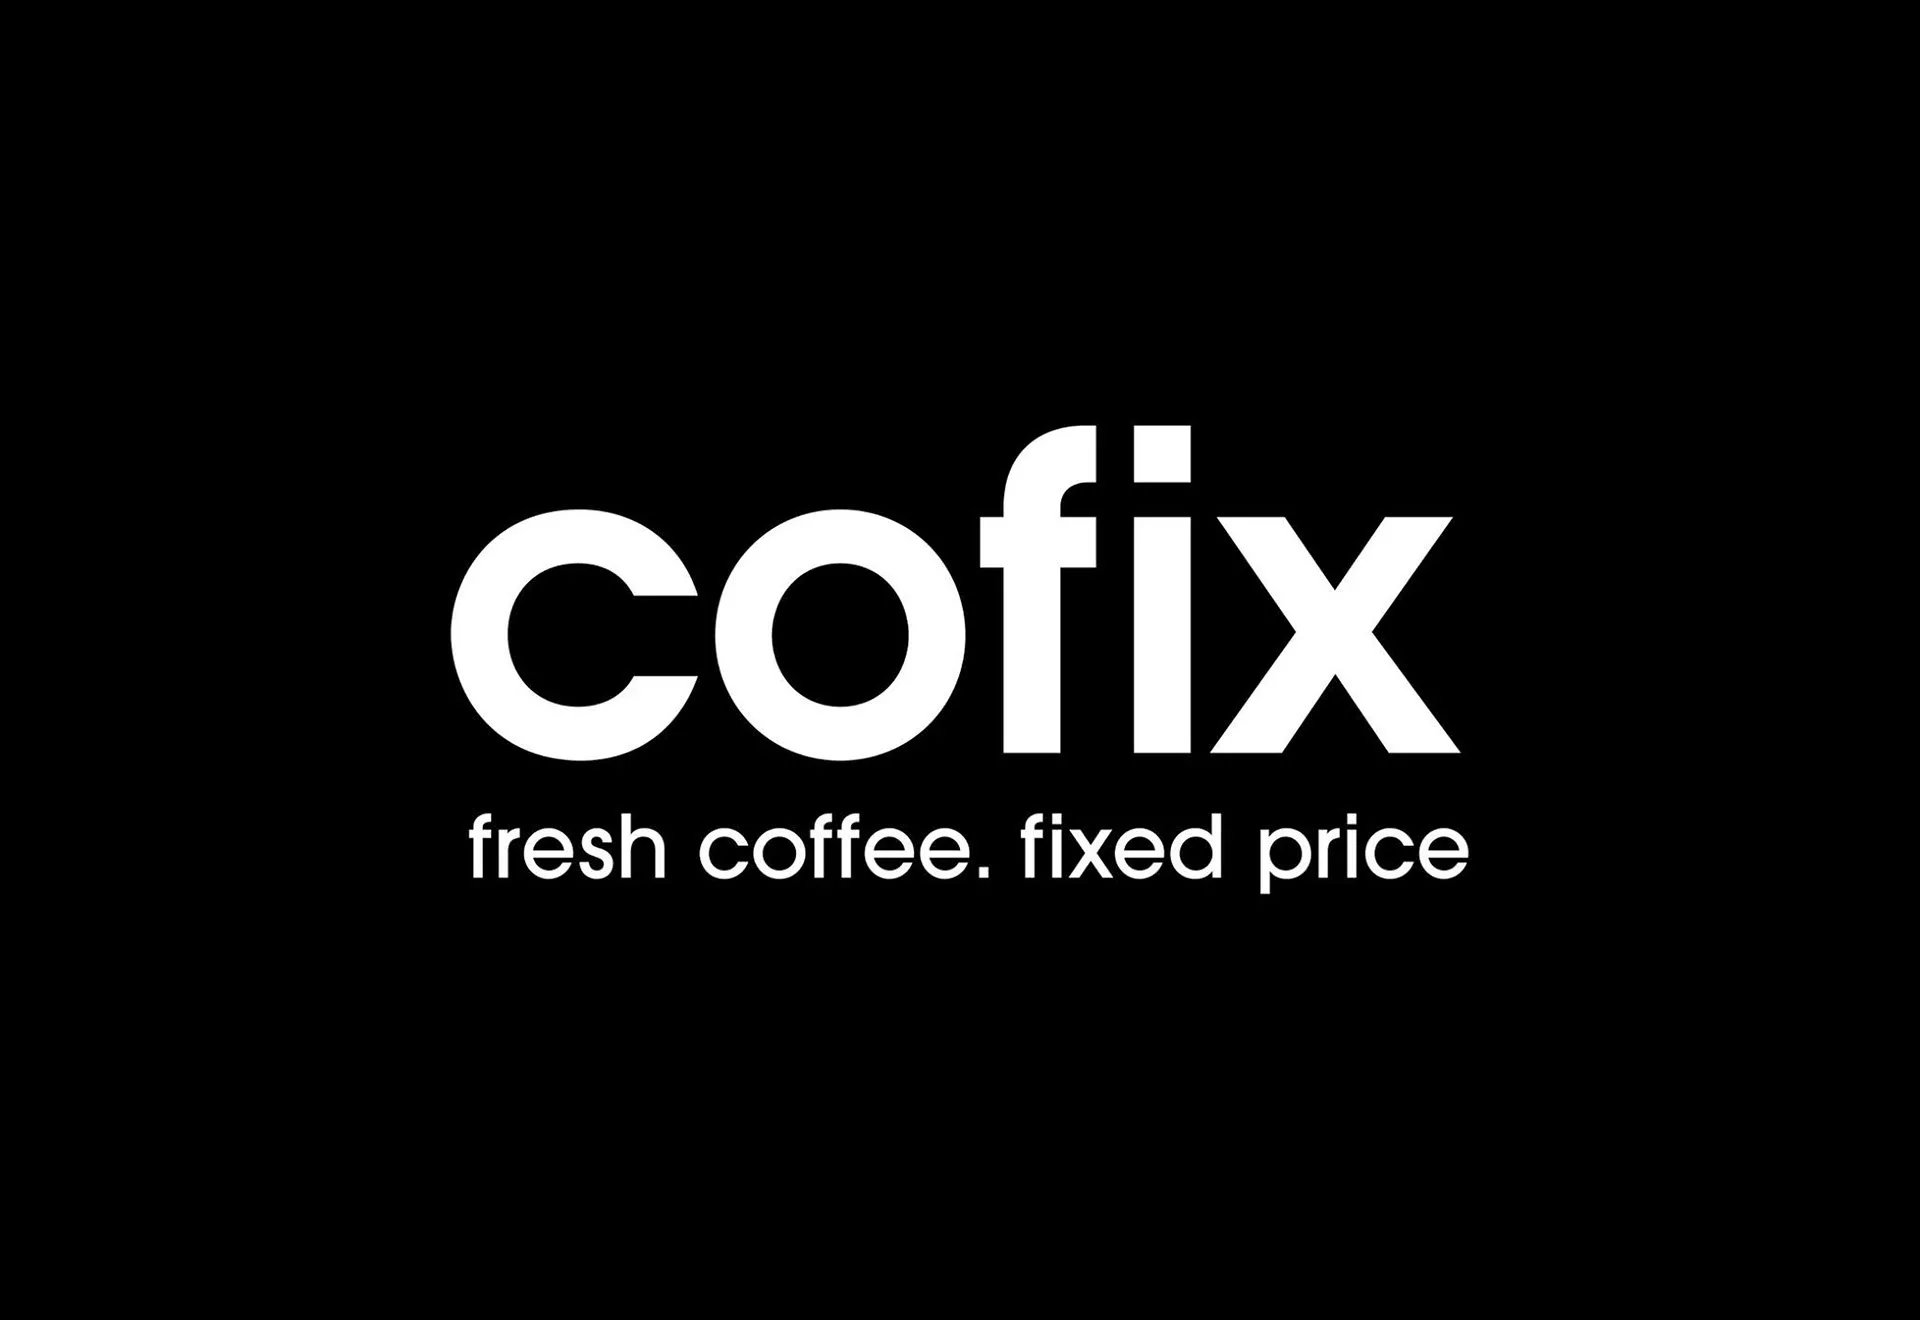 Кофикс франшиза. Кофикс. Кофикс логотип. Cofix кофе. Cofix вывеска.